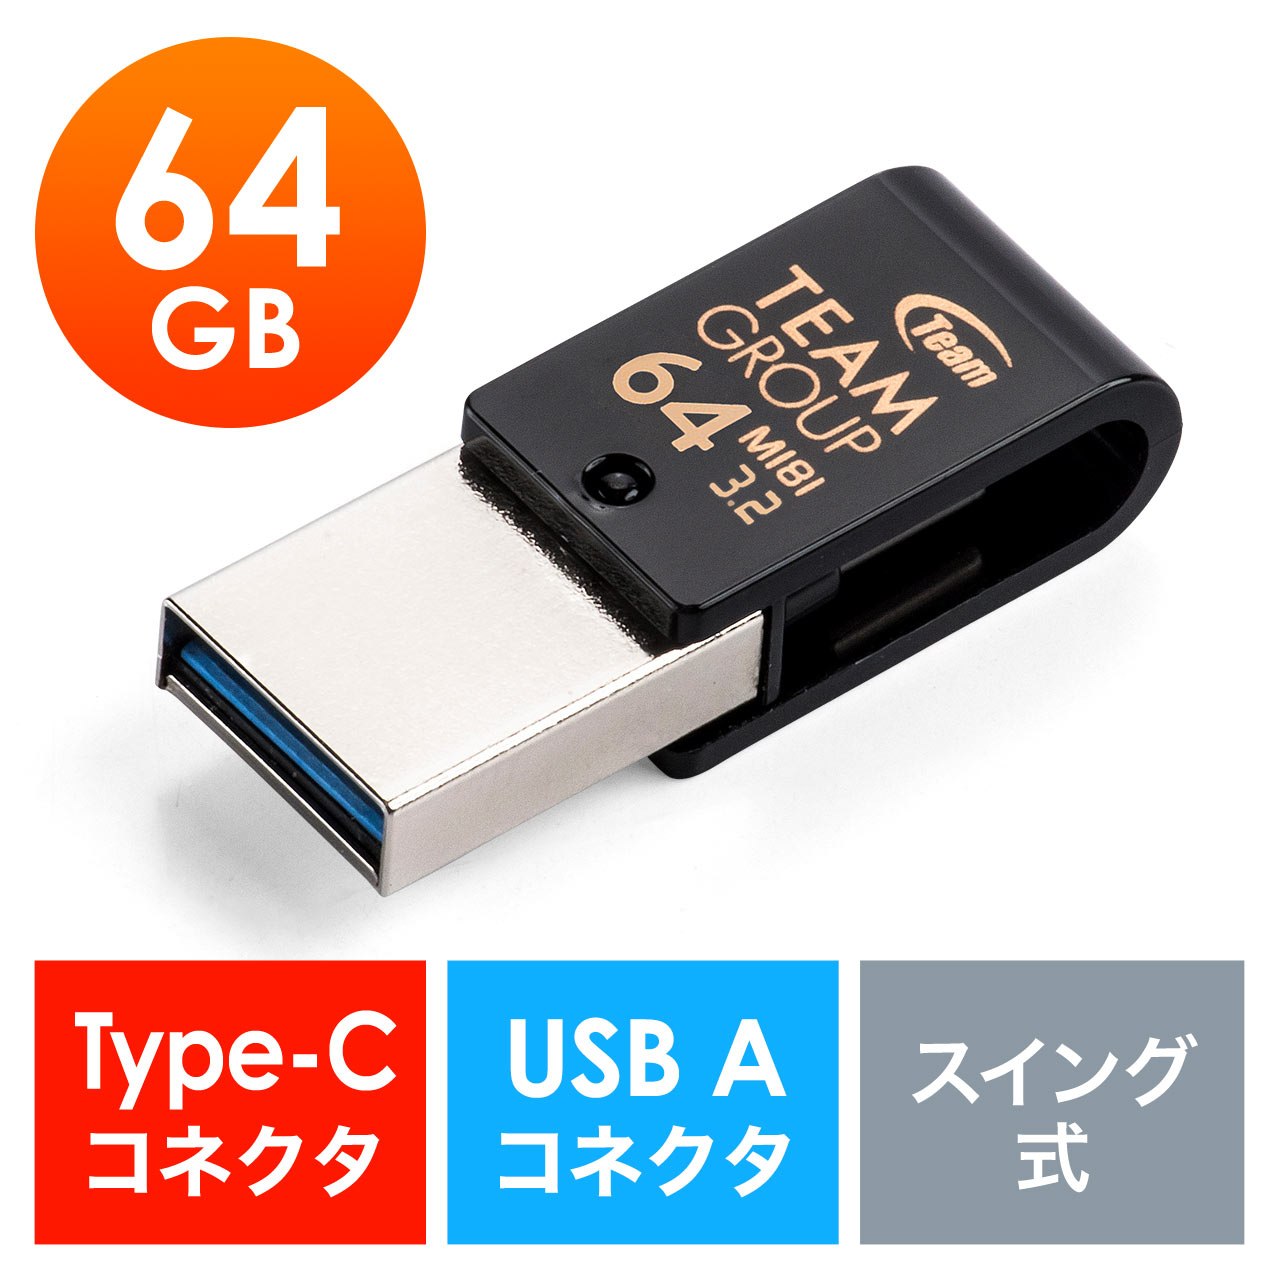 新作製品、世界最高品質人気! USBメモリ 64GB 2.0規格 1個 USBフラッシュドライブ 小型軽量